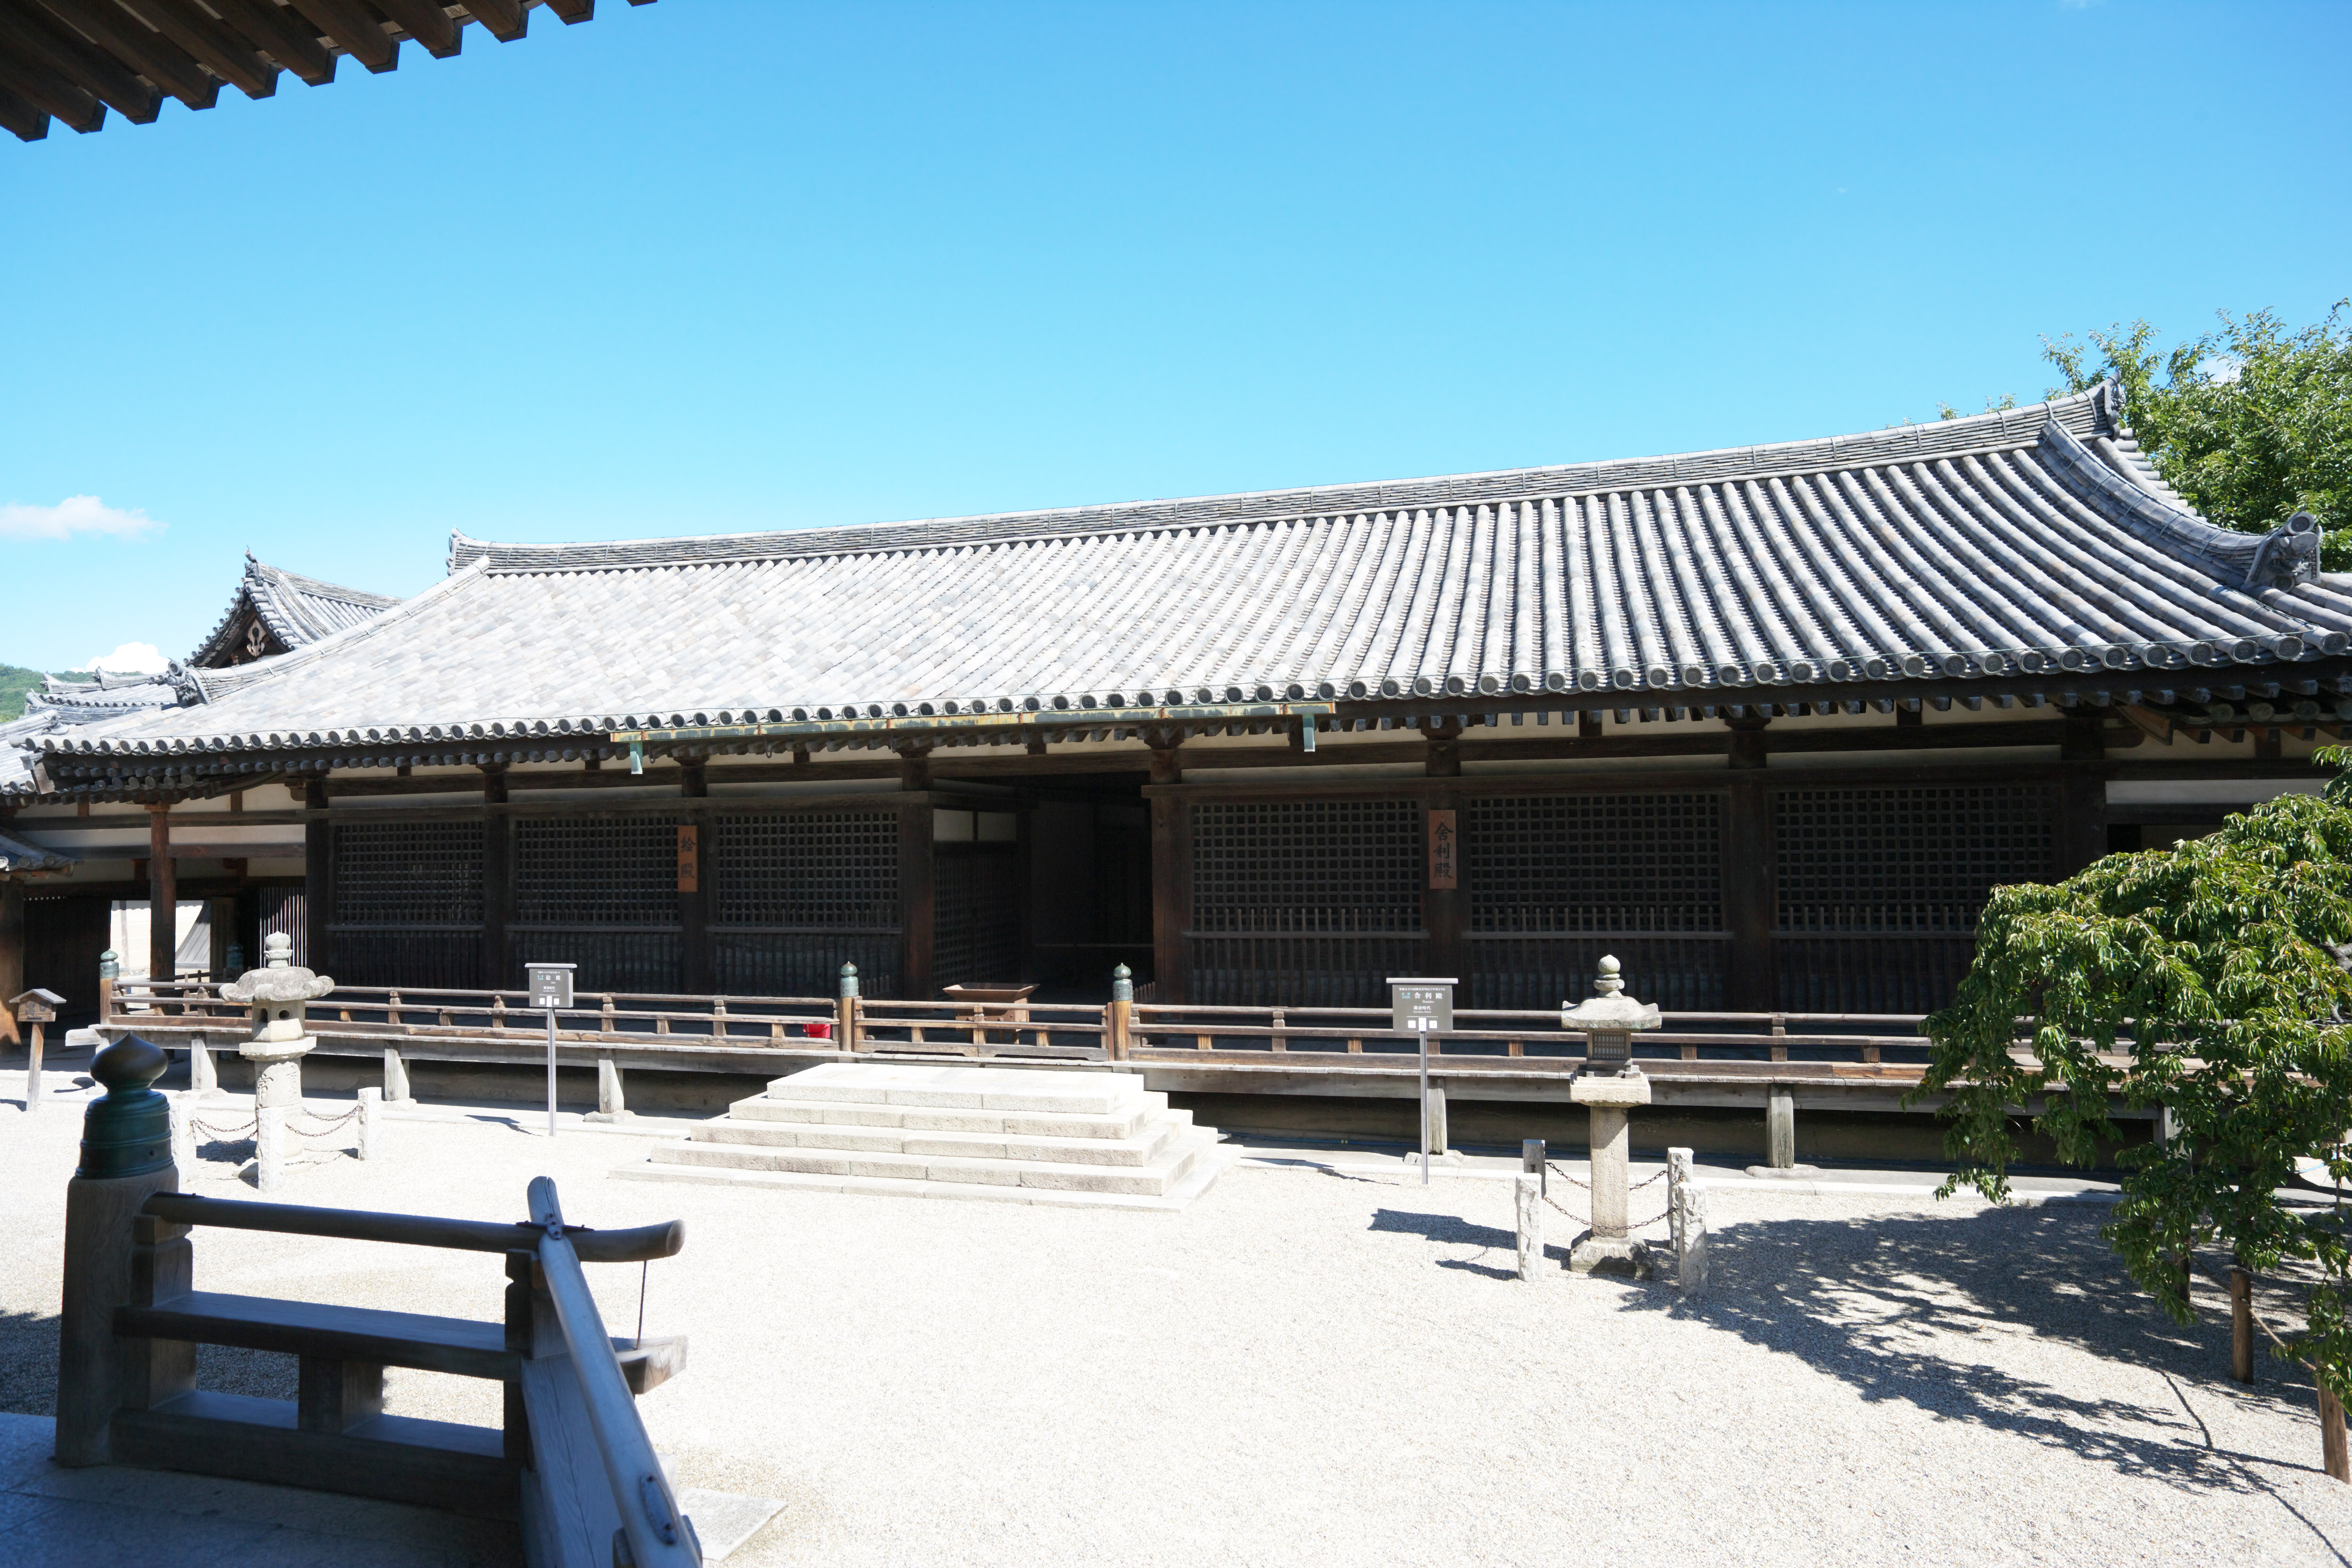 fotografia, material, livra, ajardine, imagine, proveja fotografia,Horyu-ji Templo relicrio corredor / quadro, Budismo, corredor de relicrio, Quadro, edifcio de madeira